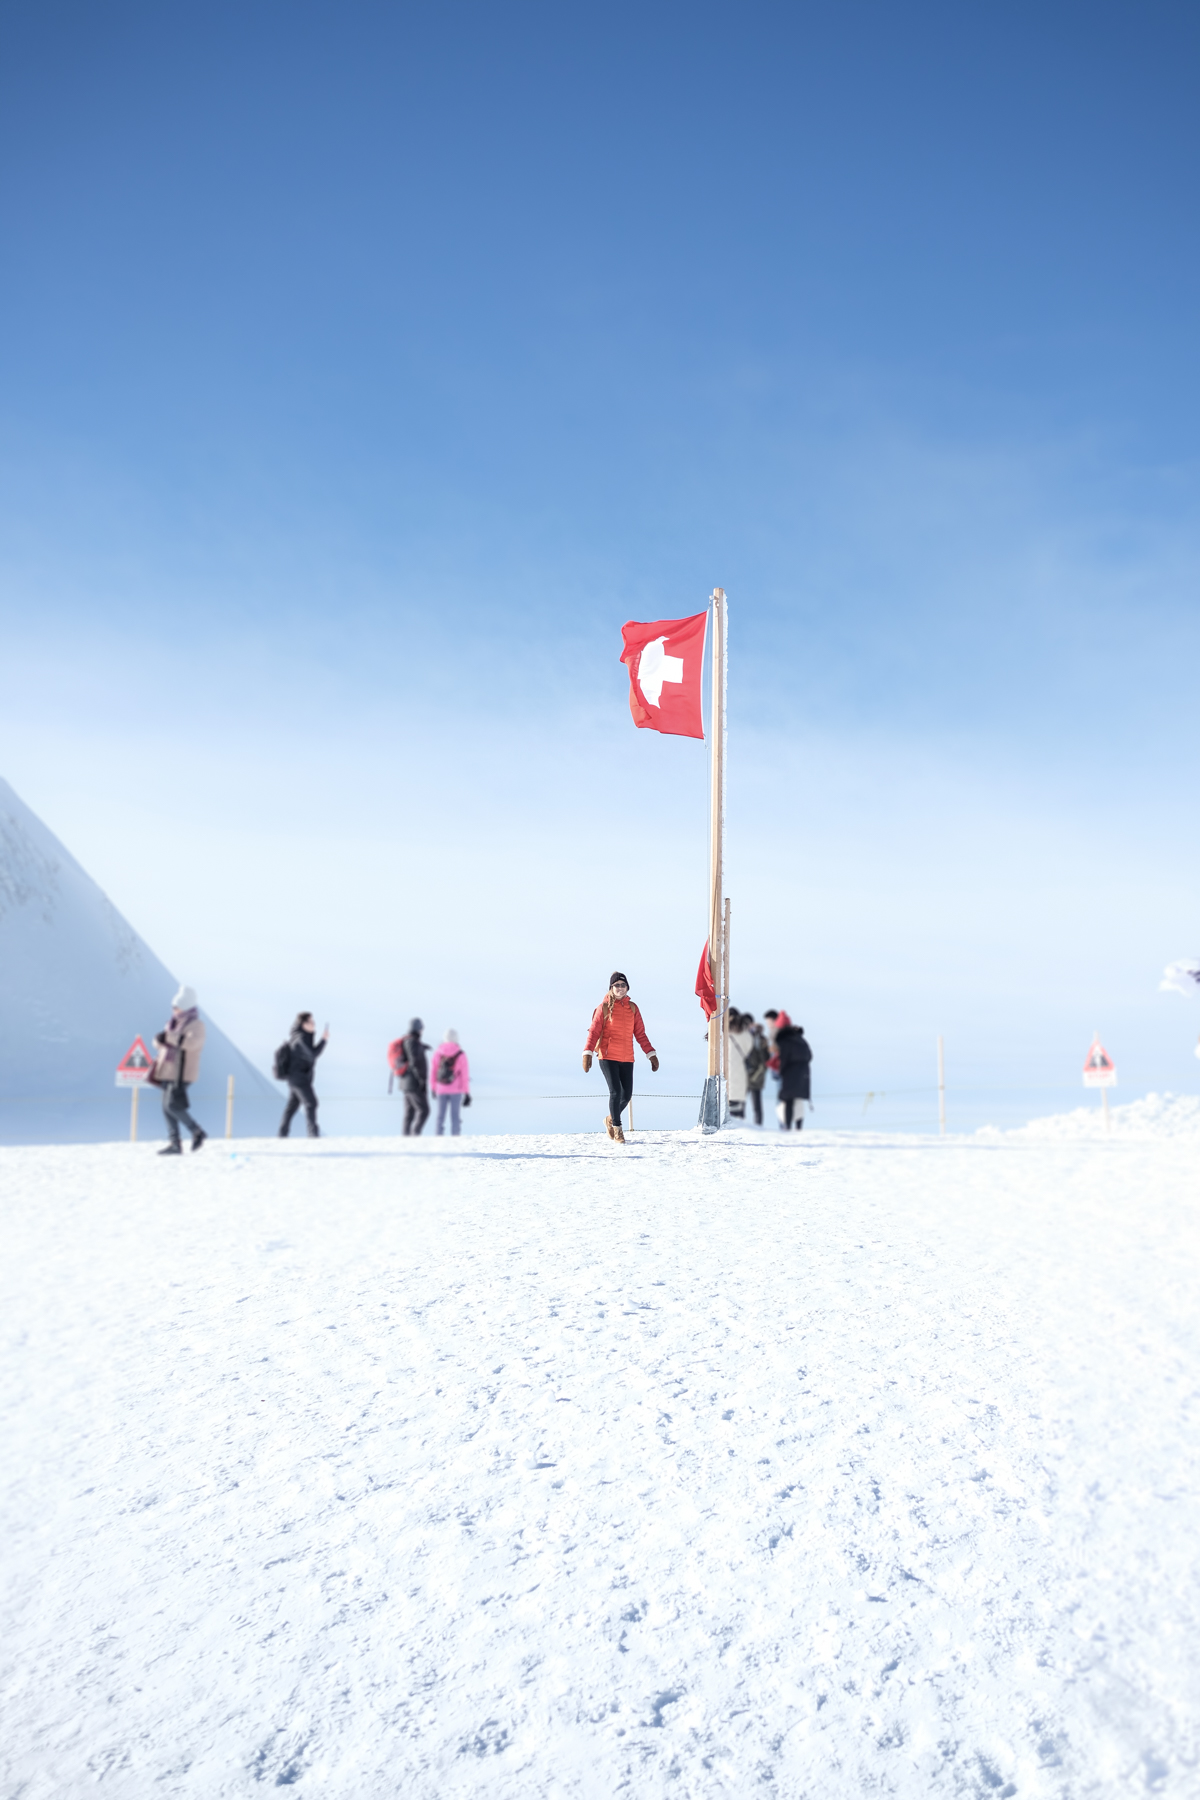 le plateau glaciere de jungfrau, top of europe